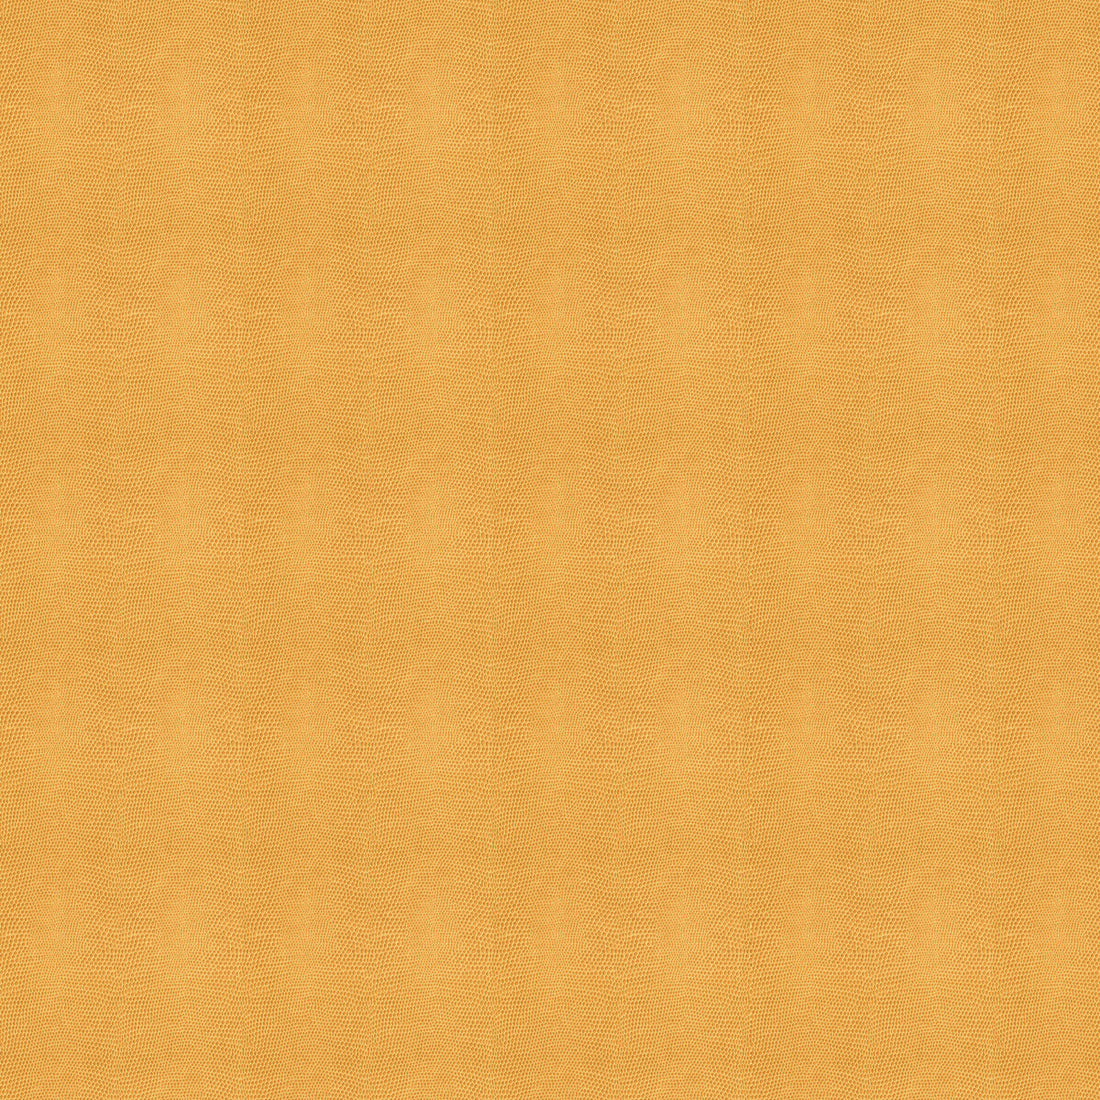 Kravet Design fabric in moccasin-1616 color - pattern MOCCASIN.1616.0 - by Kravet Design